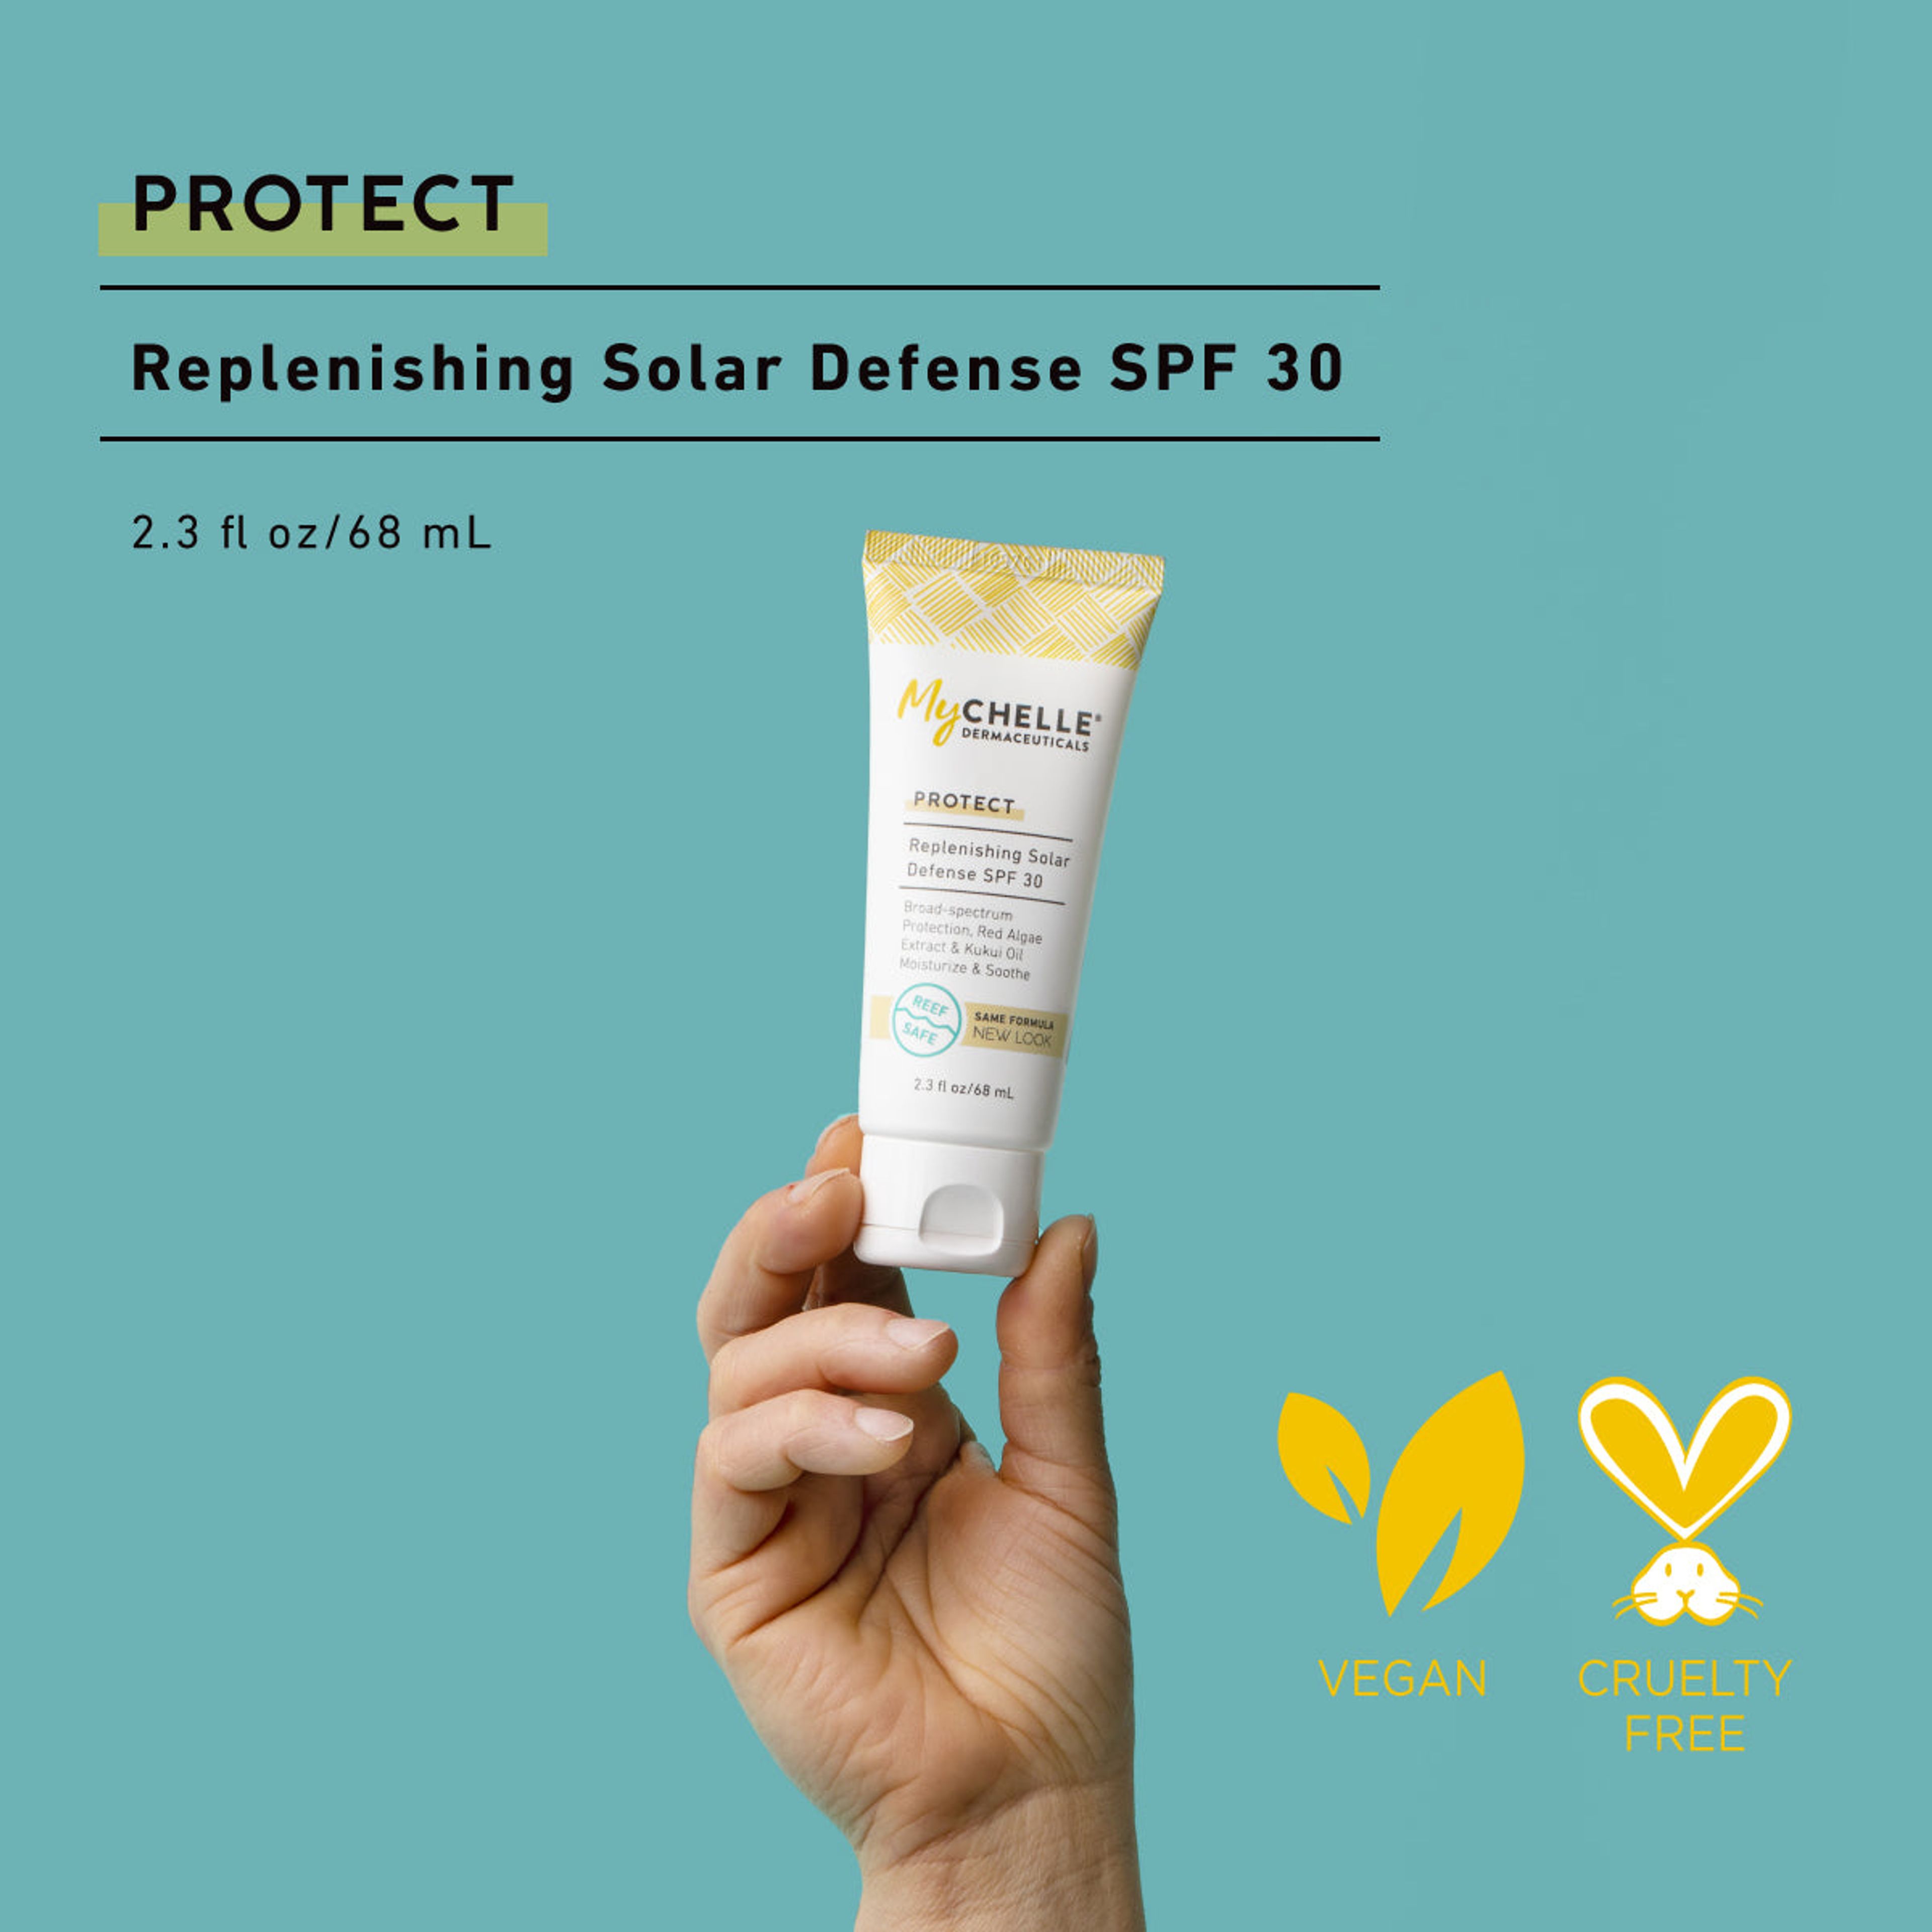 Replenishing Solar Defense SPF 30